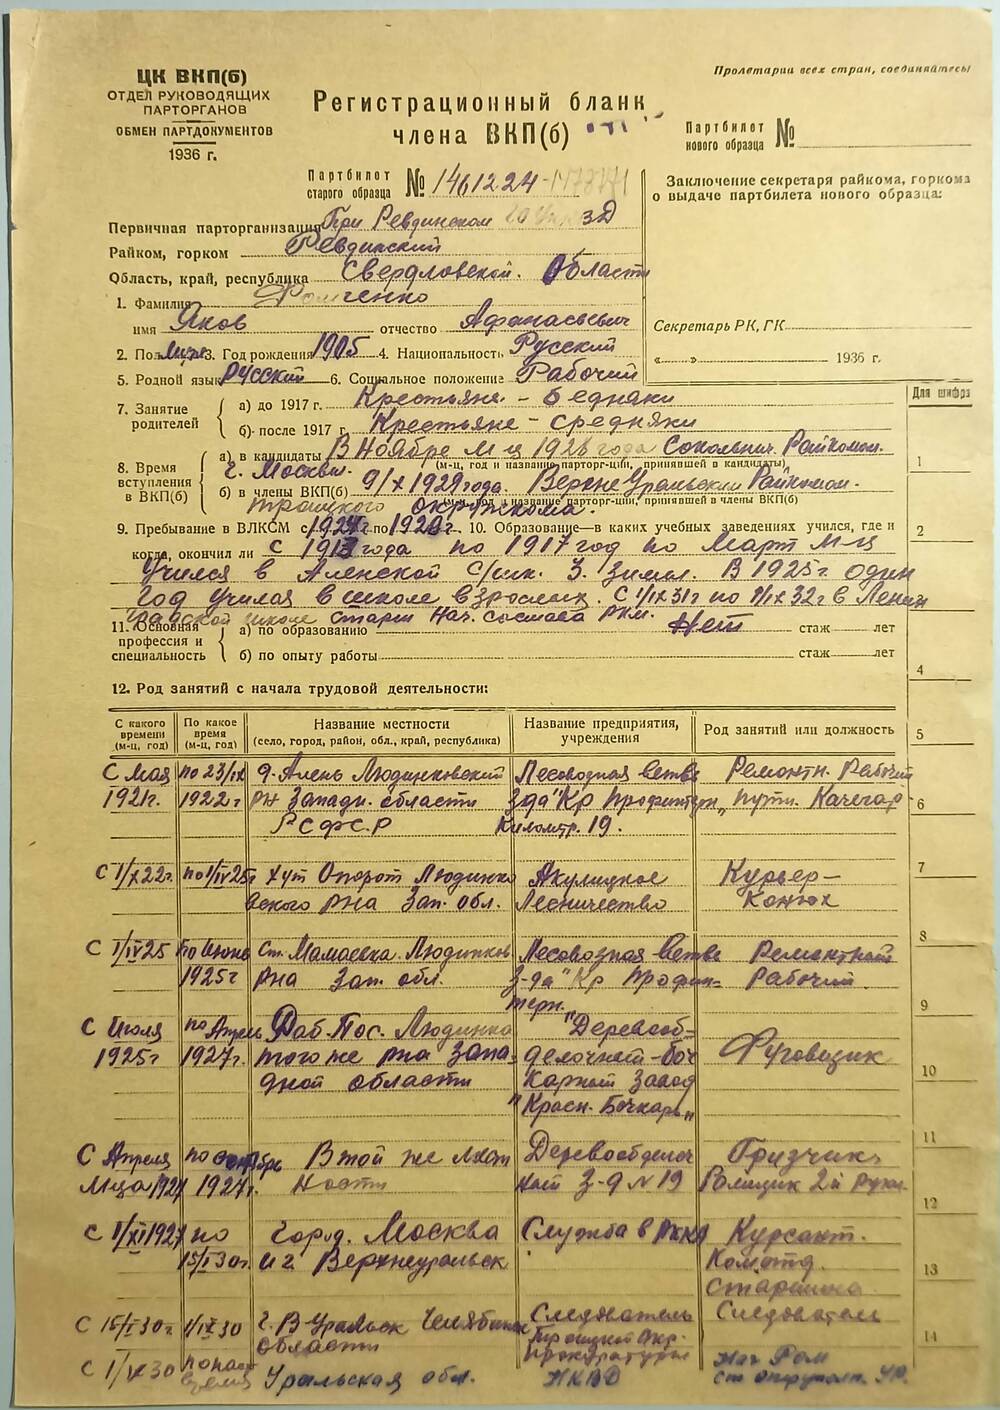 Регистрационный бланк члена ВКП(б) Фомченко Я.А. 17 мая 1936 г.